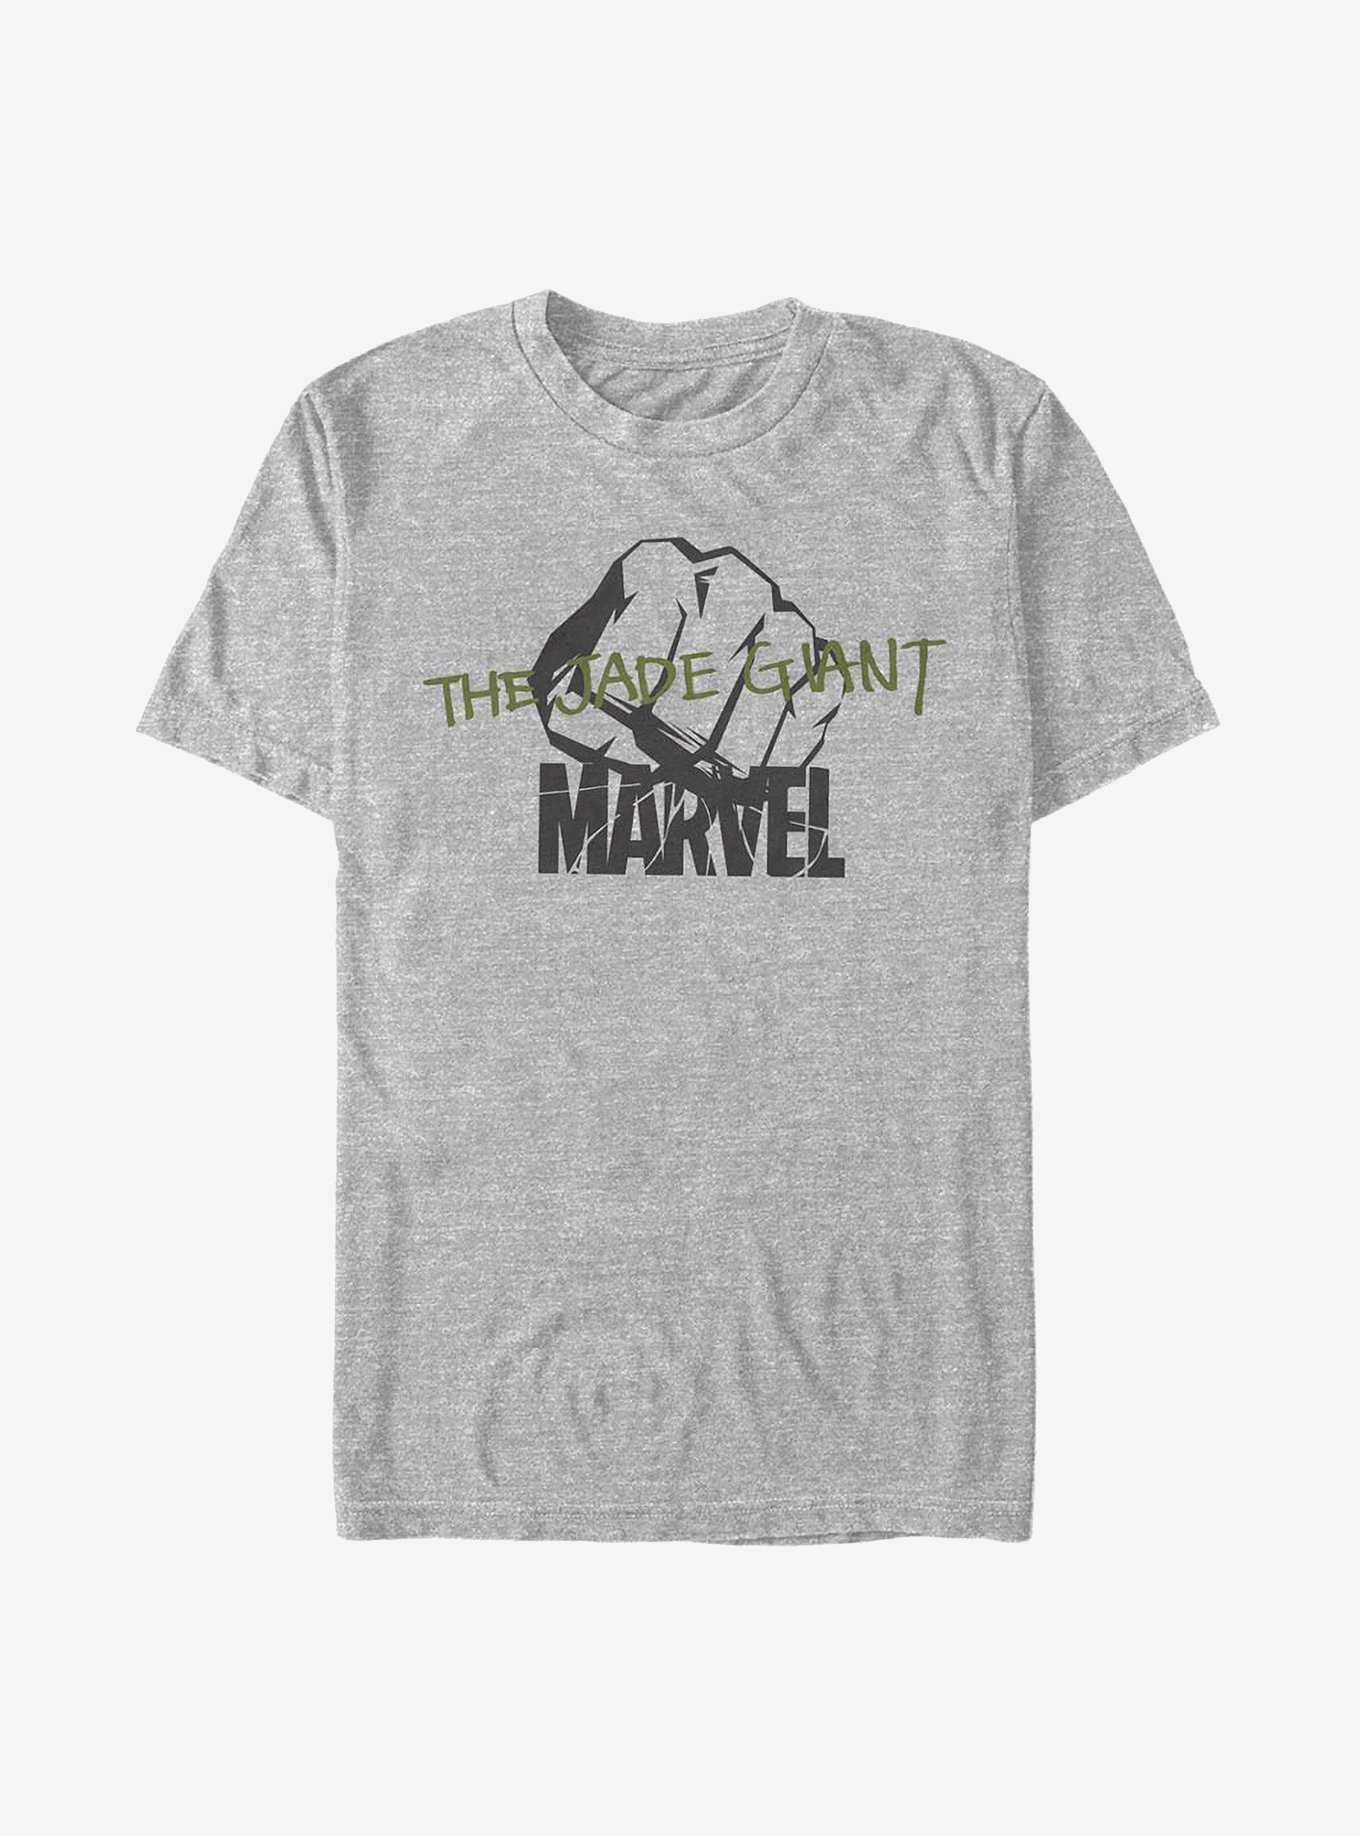 Marvel Hulk Jade Giant T-Shirt, , hi-res